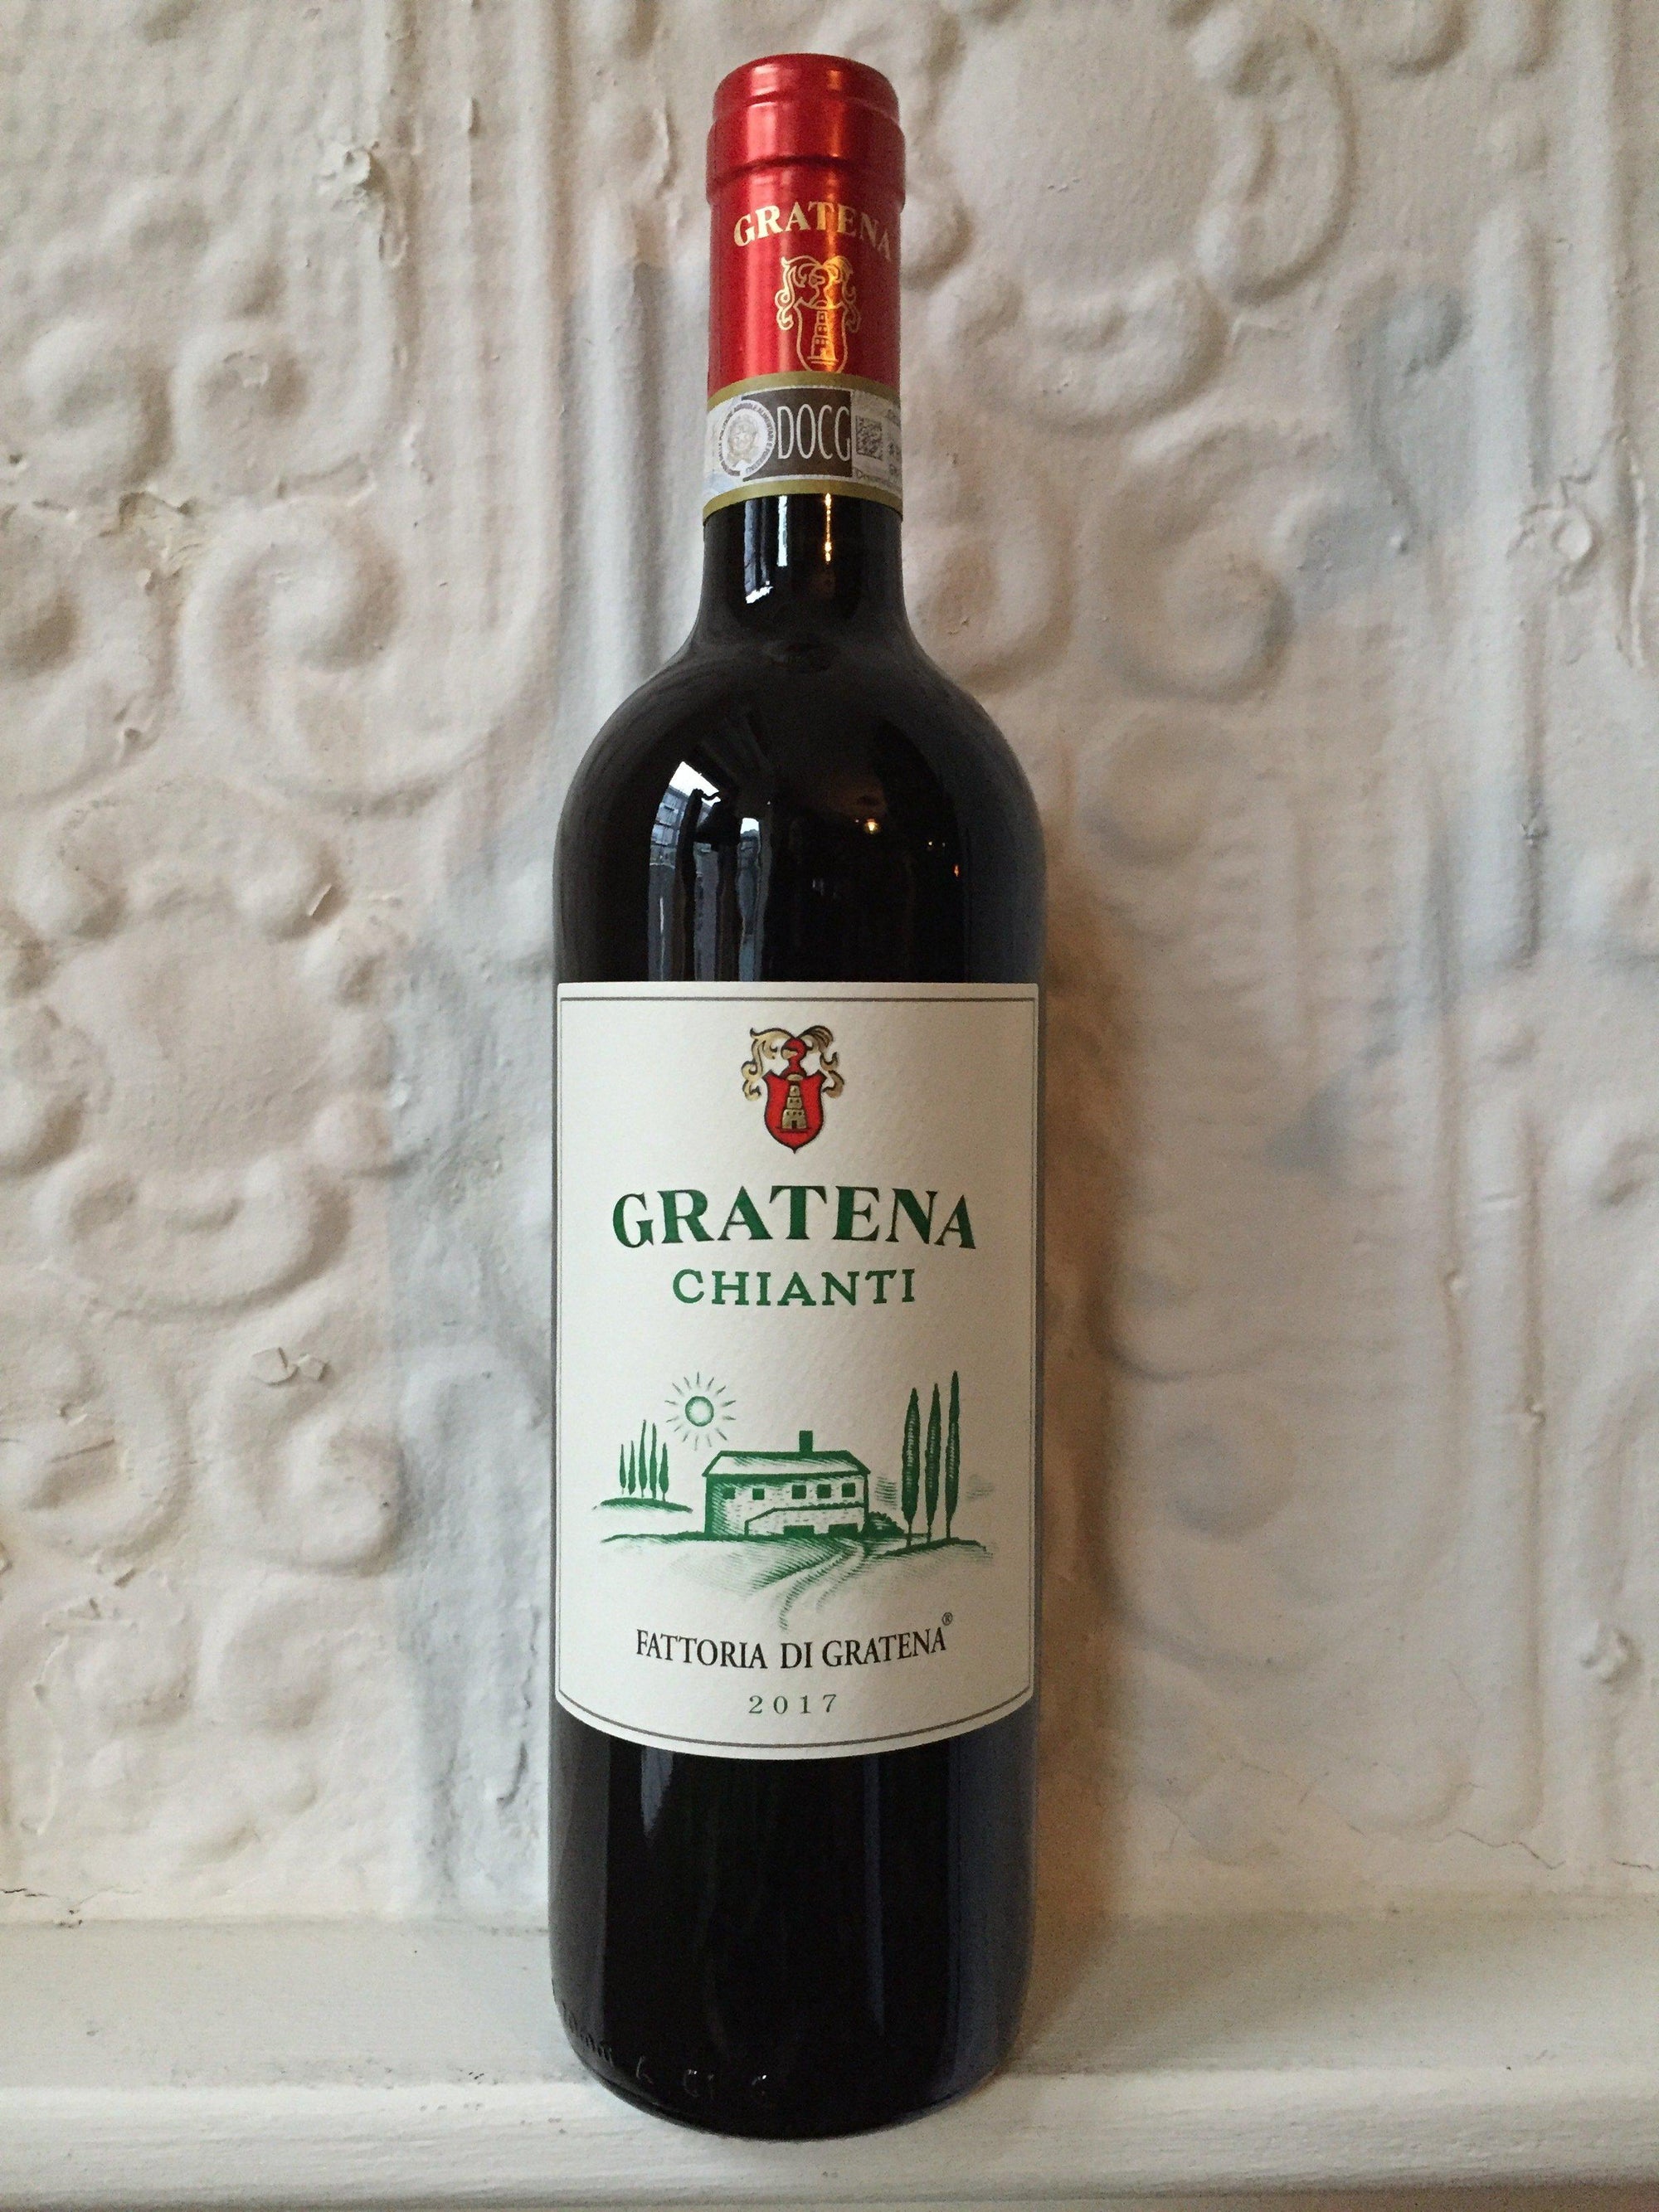 Chianti, Fattoria di Gratena 2017 (Toscany, Italy)-Wine-Bibber & Bell